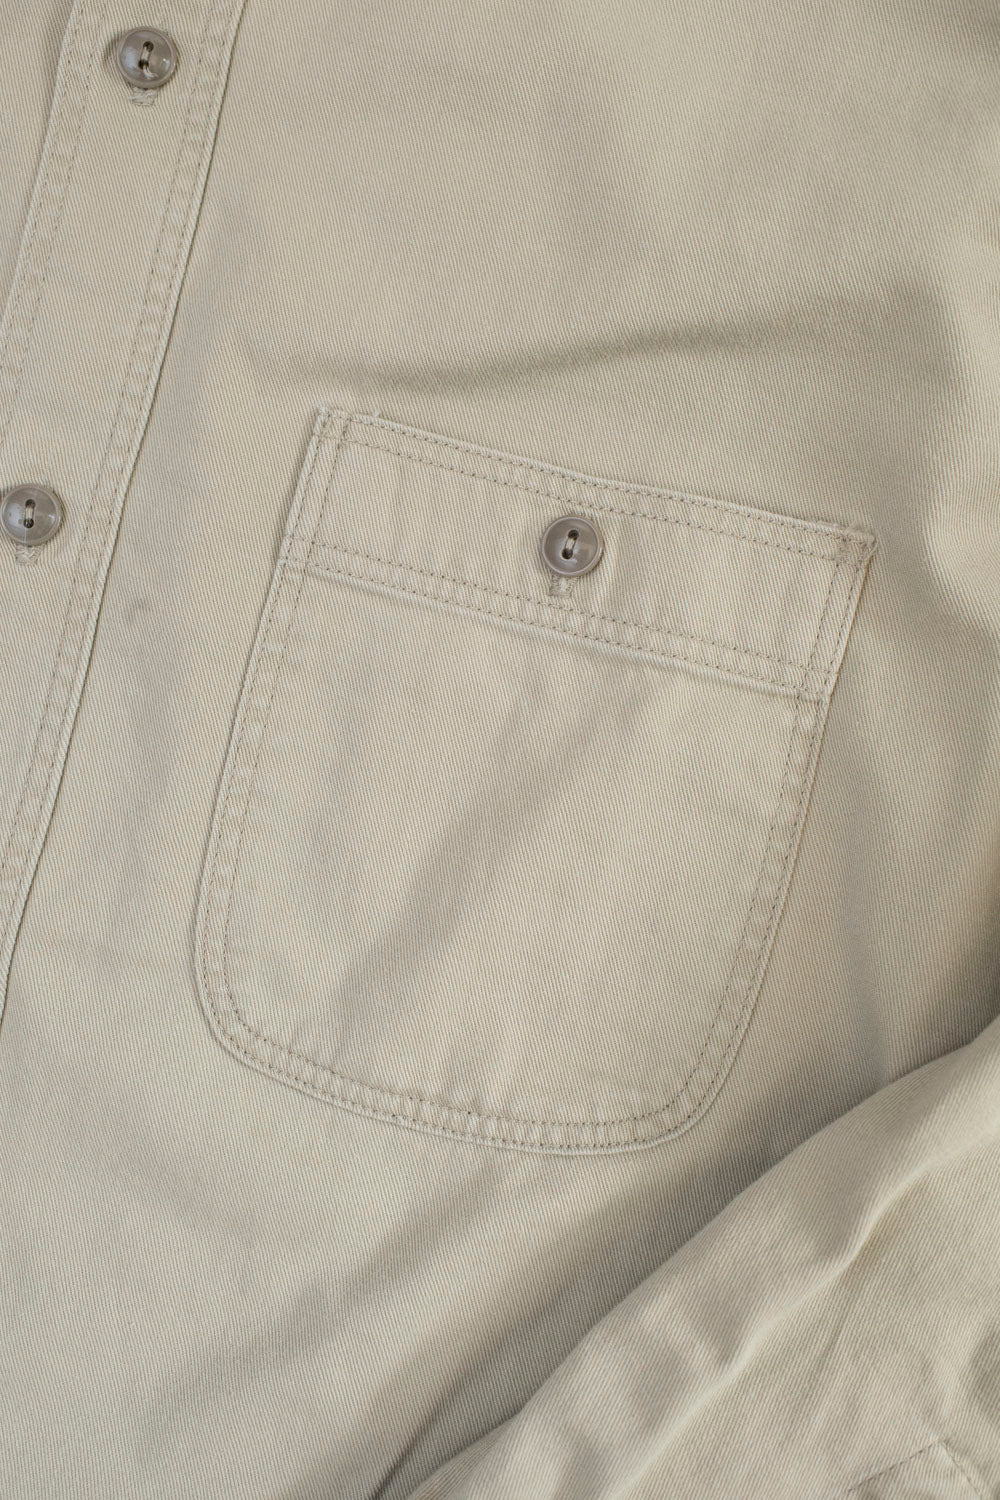 03-V8070- 67 - 1960s Twill Work Shirt Vintage Fit - Beige